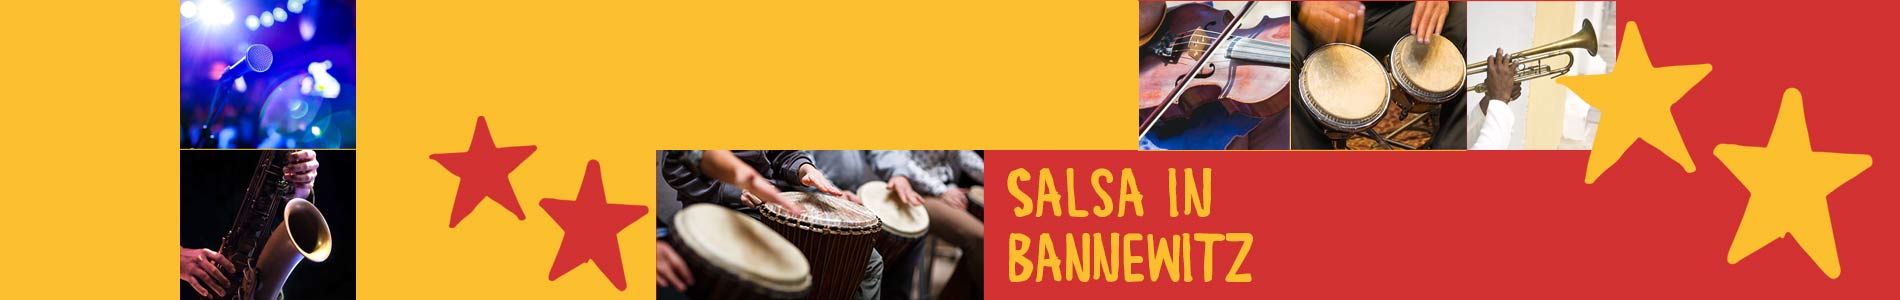 Salsa in Bannewitz – Salsa lernen und tanzen, Tanzkurse, Partys, Veranstaltungen